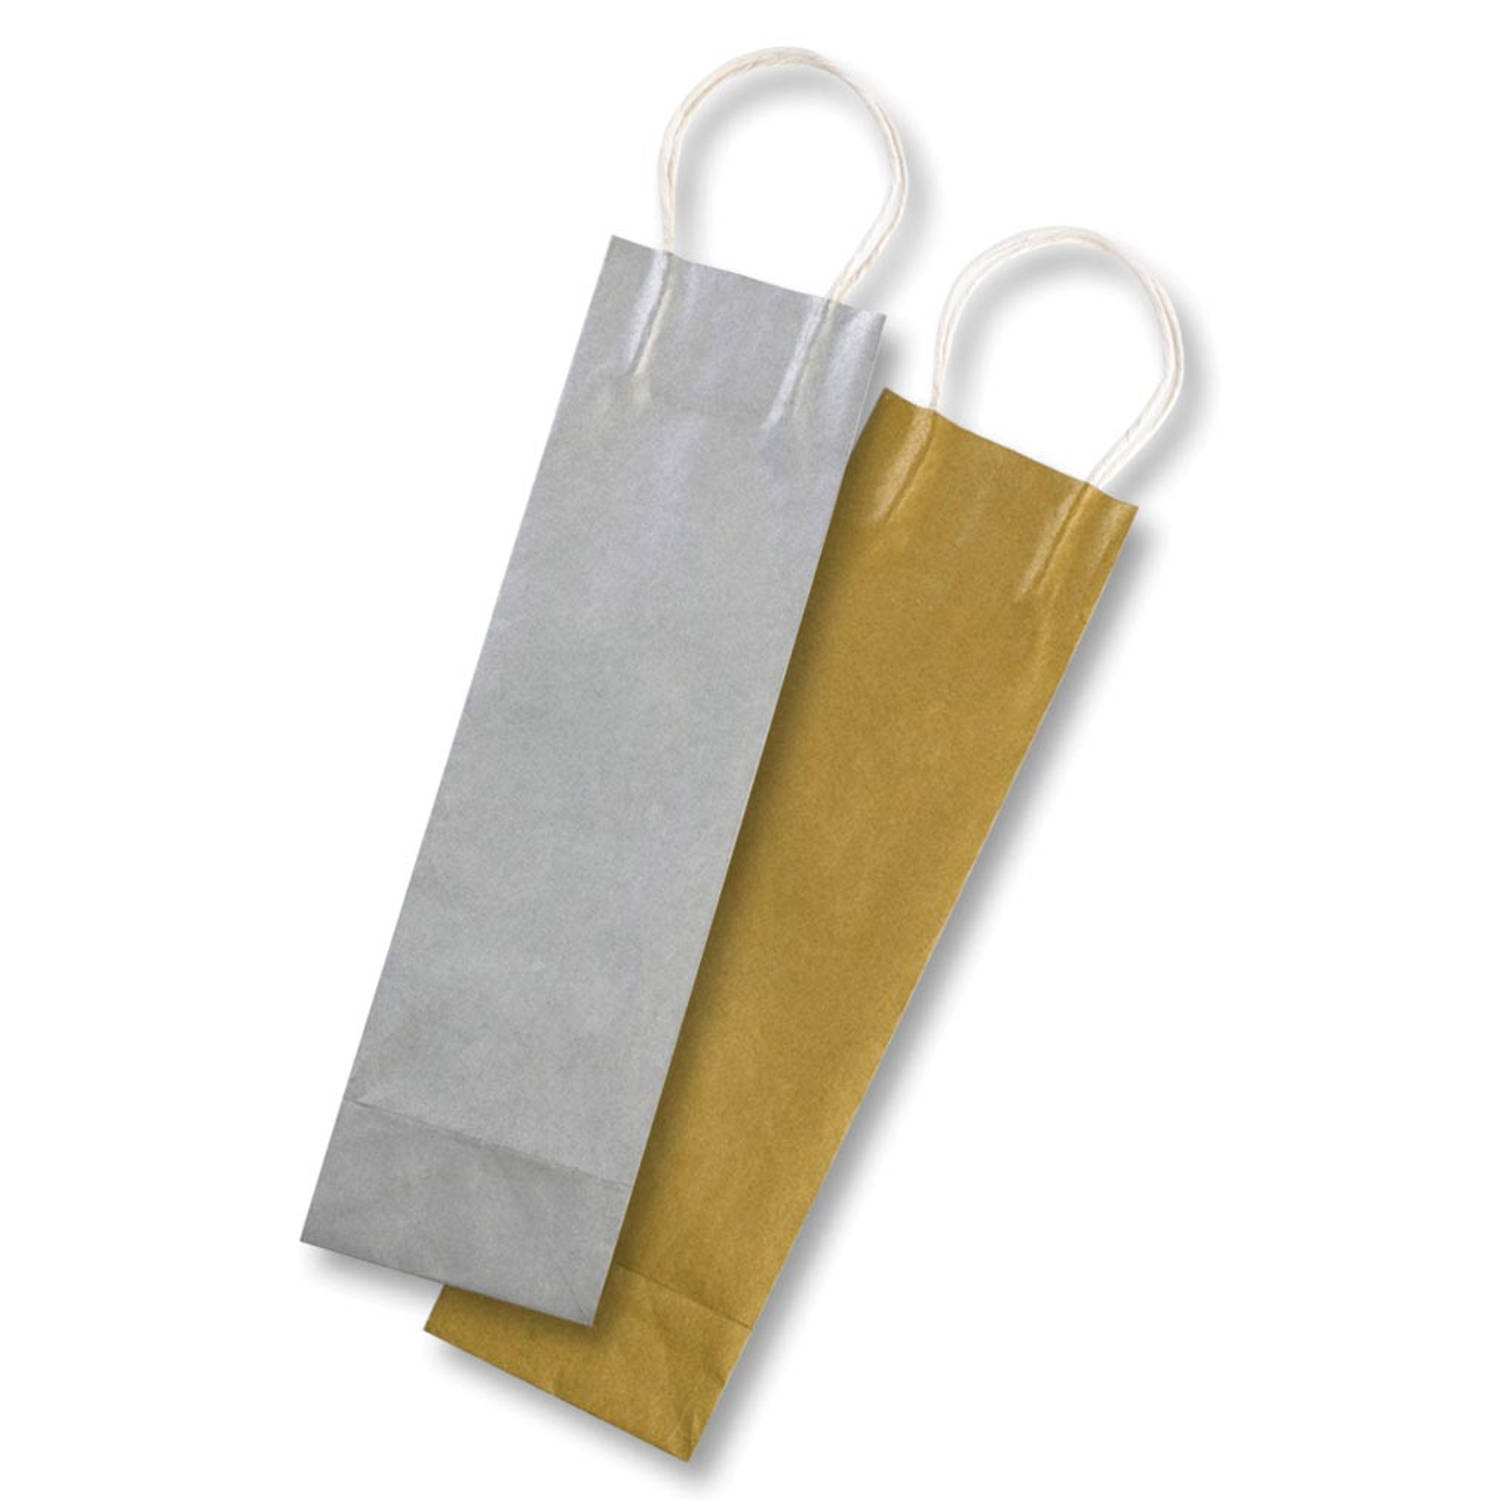 Folia papieren kraft zak voor flessen, 110 g/m², goud en zilver, pak van 6 stuks 25 stuks